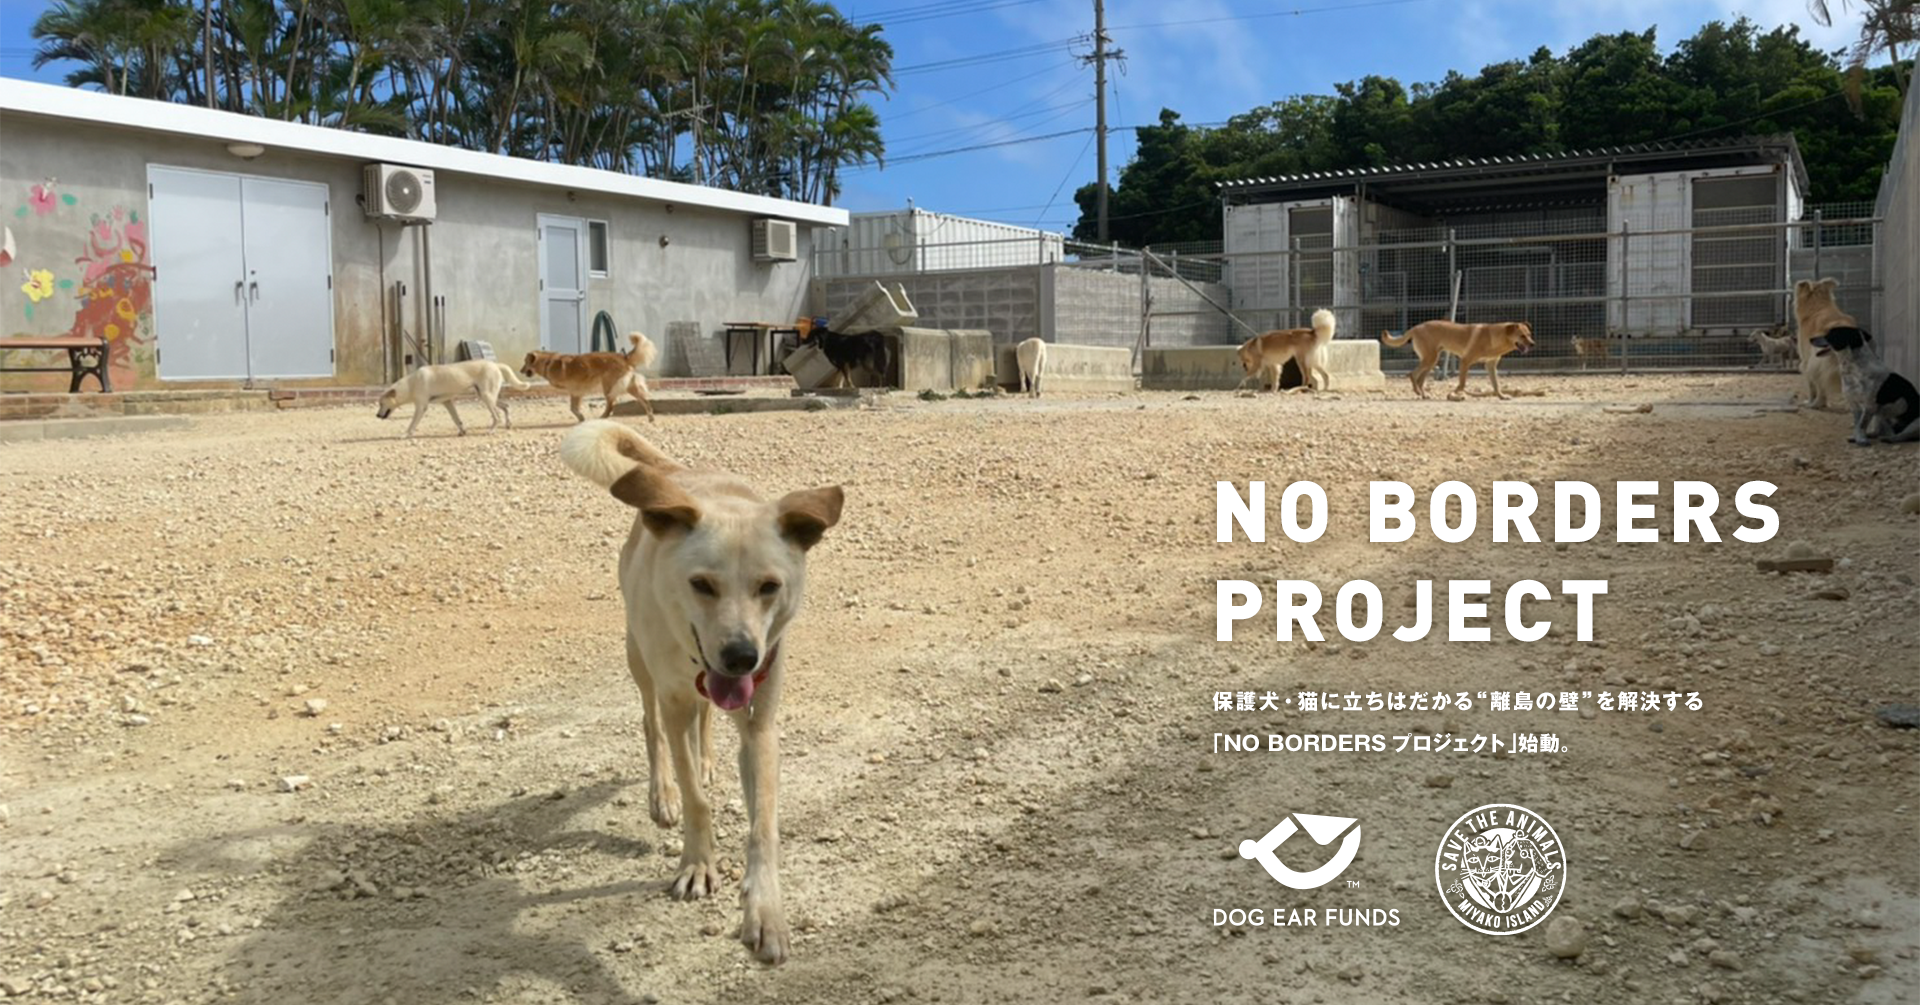 NPO法人「DOG EAR FUNDS」と犬猫の保護団体「宮古島 SAVE THE ANIMALS」との協働により保護犬・猫に立ちはだかる“離島の壁”を解決する「NO BORDERSプロジェクト」始動のサブ画像1